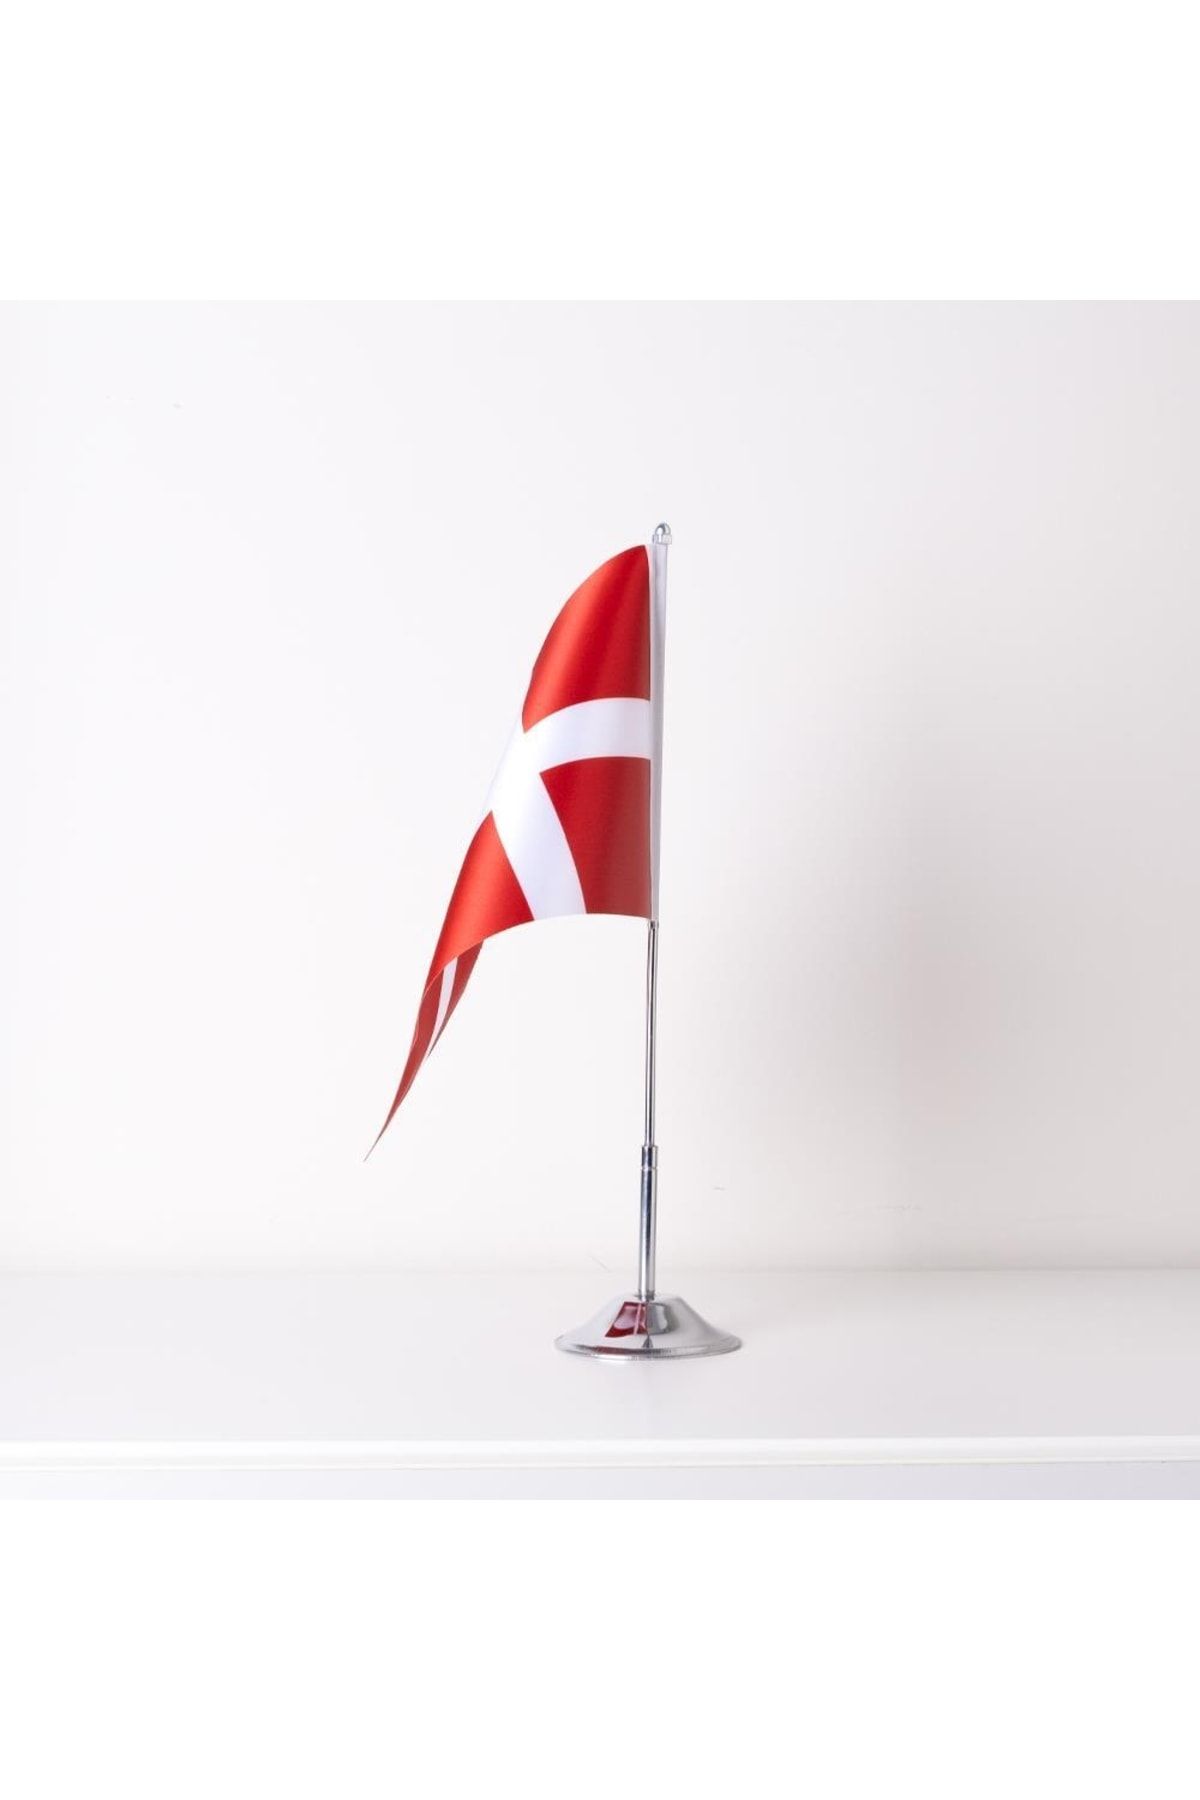 ZC Bayrak Danimarka Tekli Masa Bayrağı Saten Kumaş Dijital Baskı 15x22,5 Cm